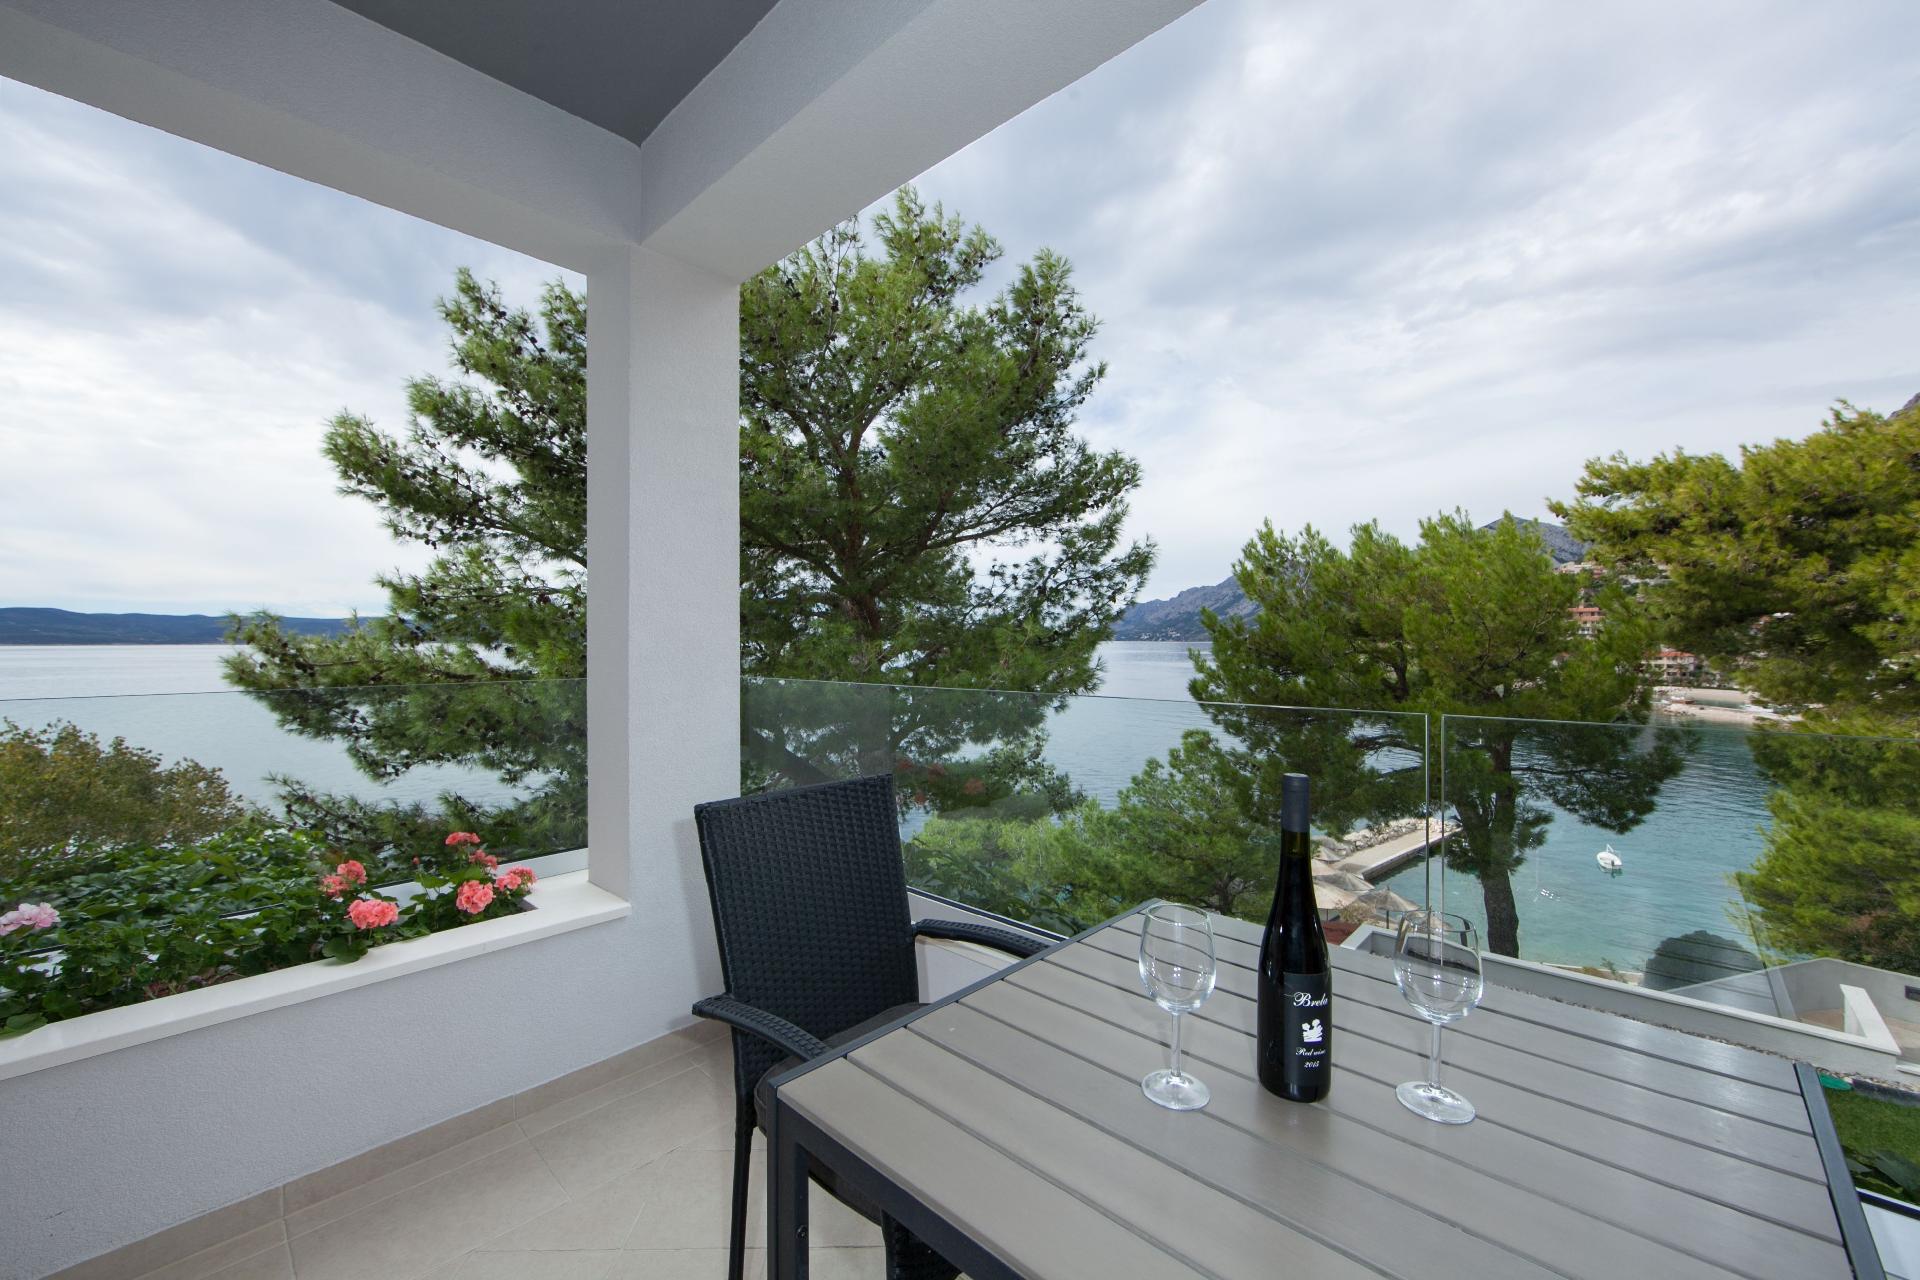 Studio mit Balkon für drei Personen Ferienhaus in Kroatien